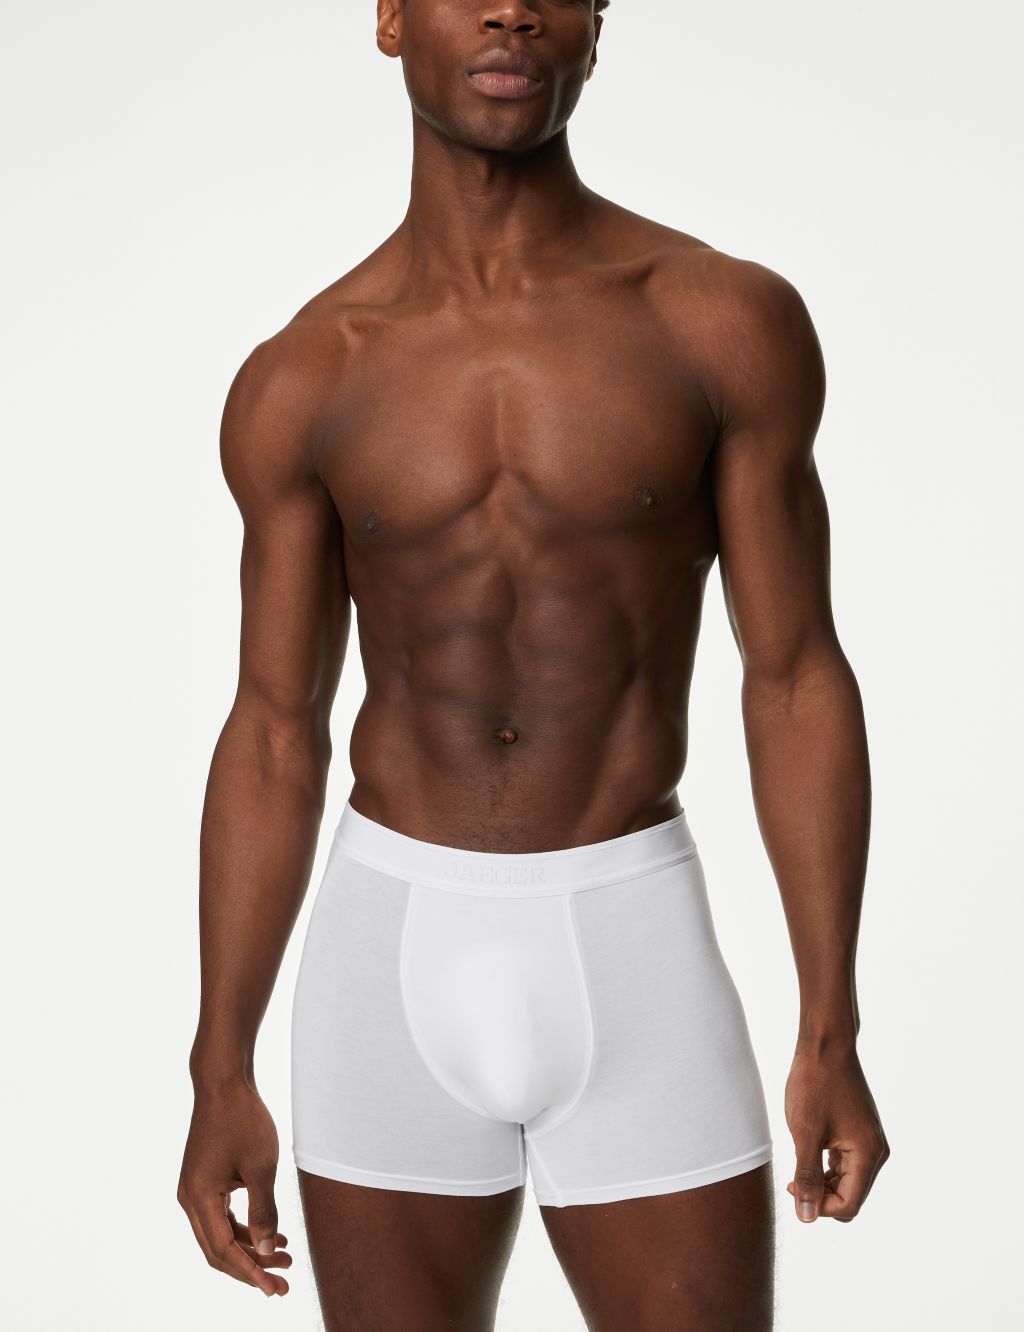 Cotton White Underwear For Men